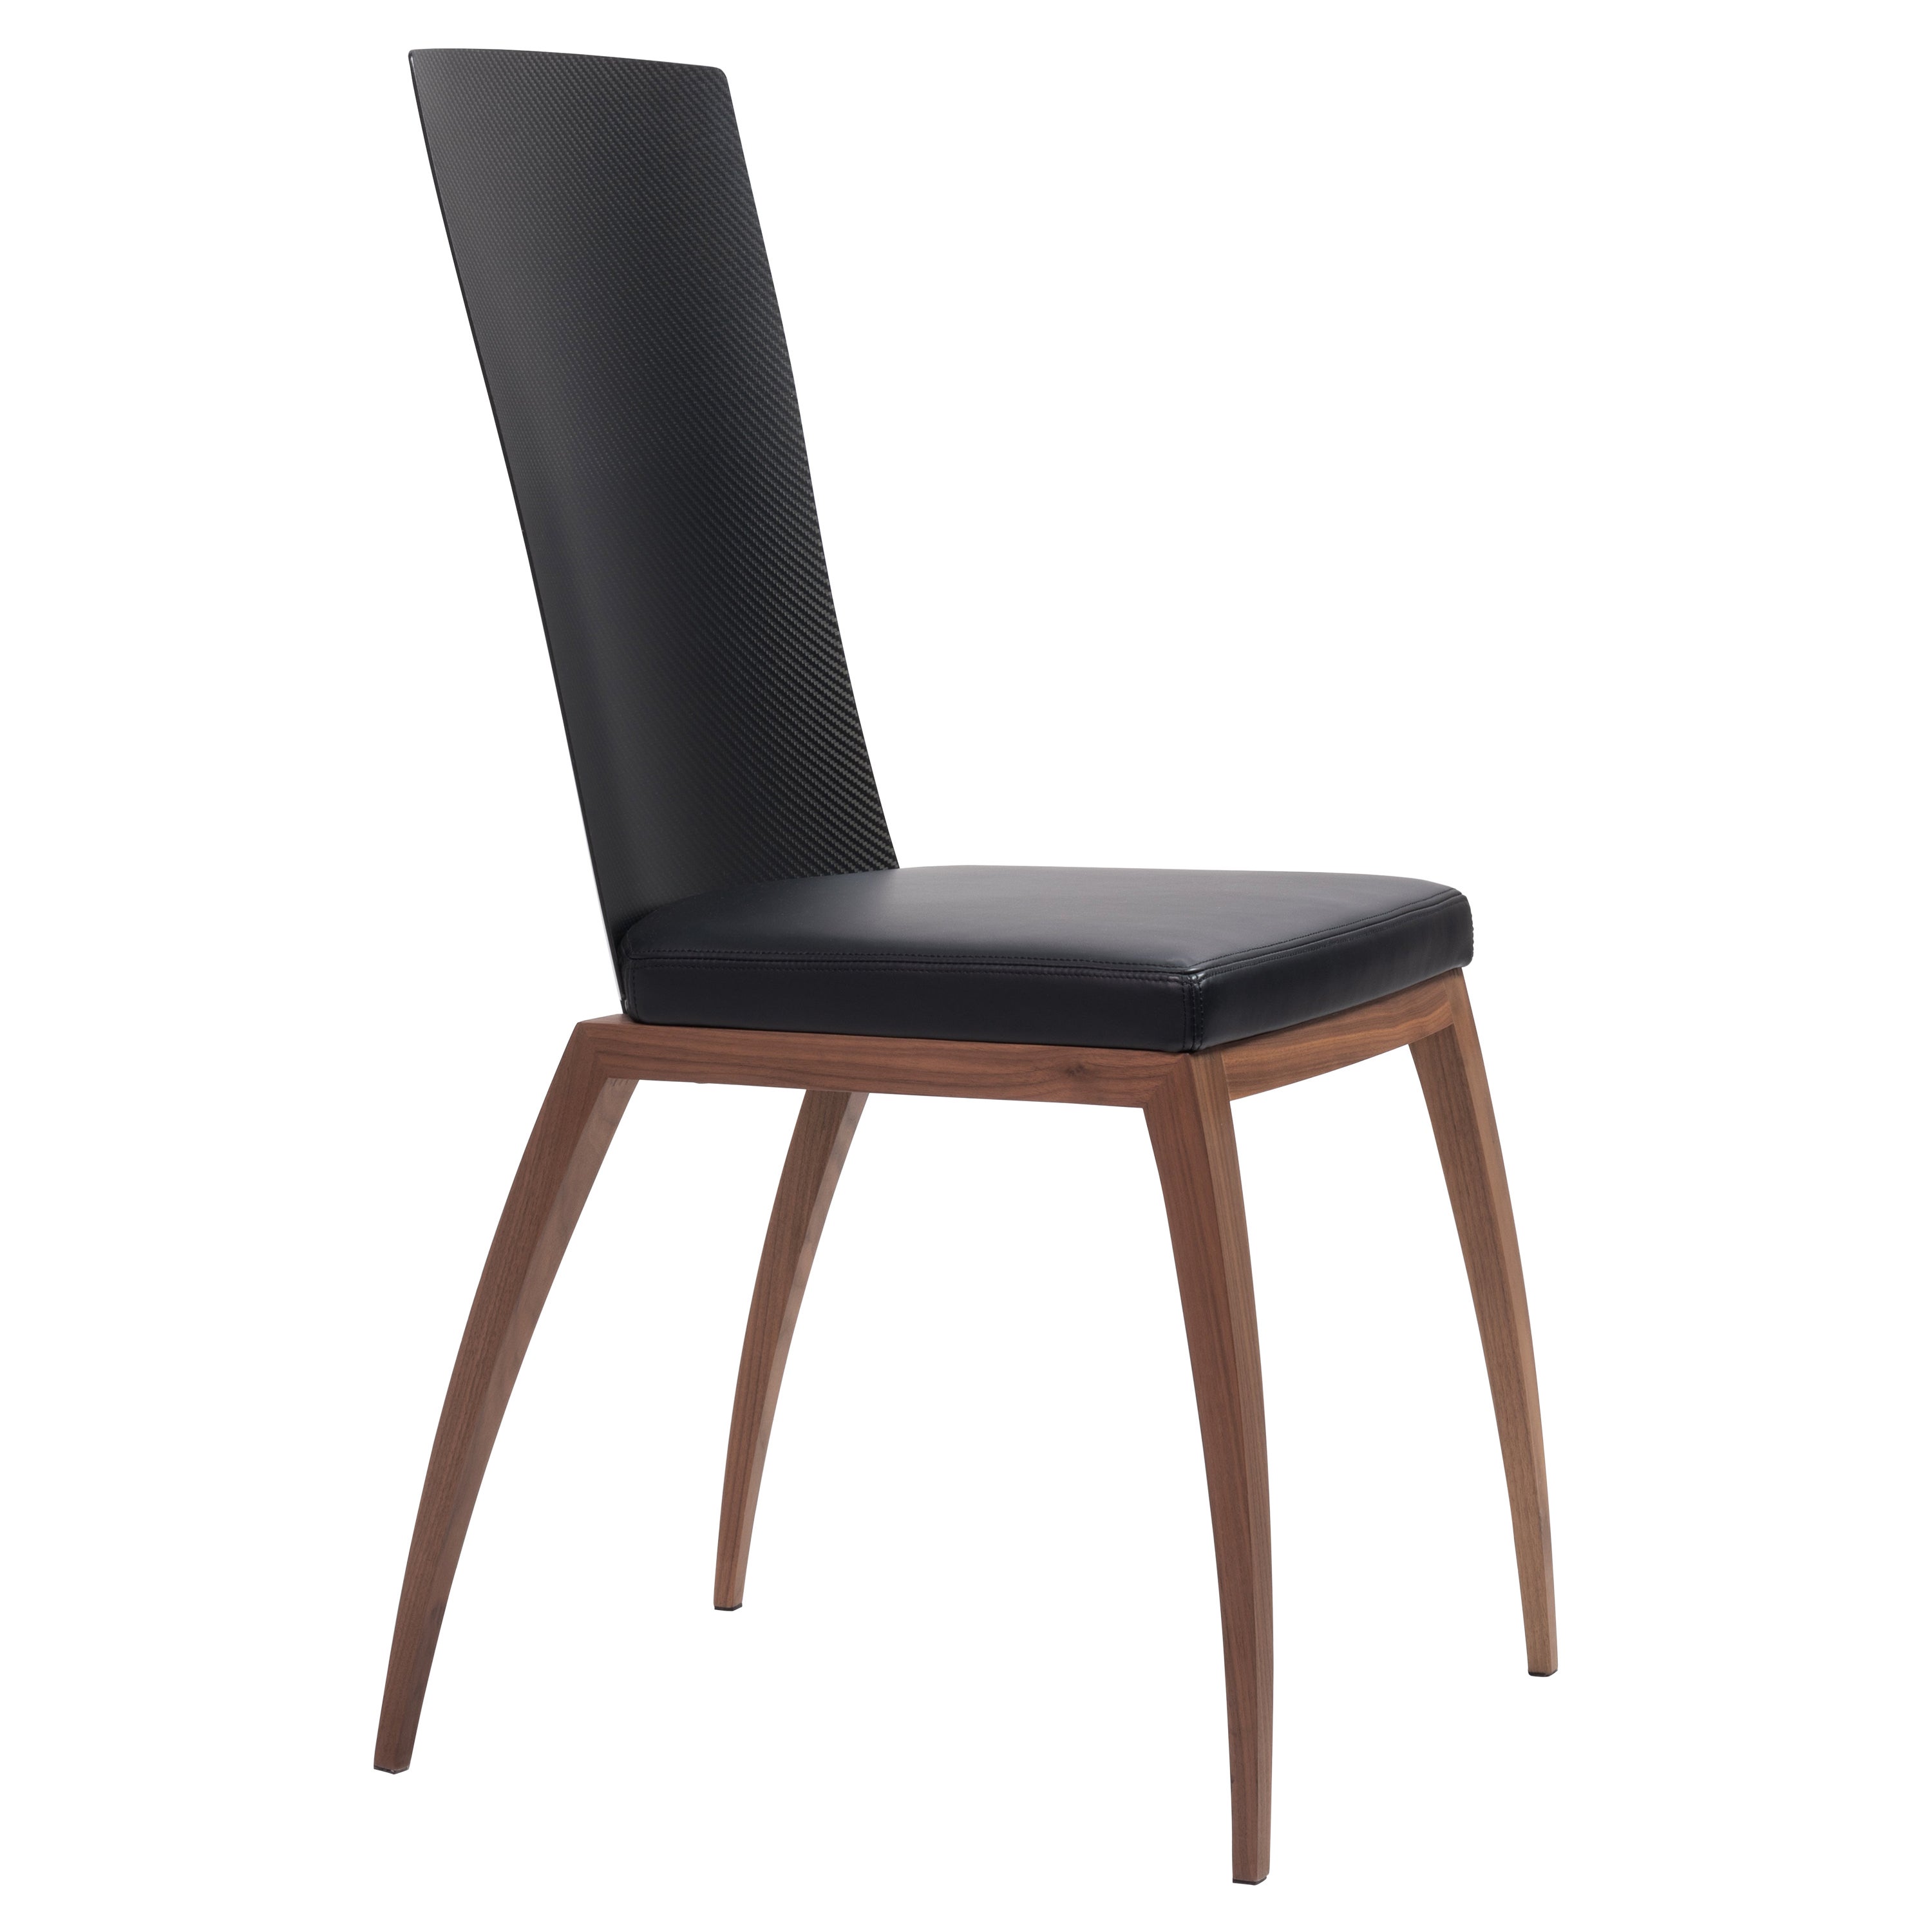 Fibra-Stuhl, Design-Stuhl aus Carbonfaser und Canaletto-Walnussholz, hergestellt in Italien